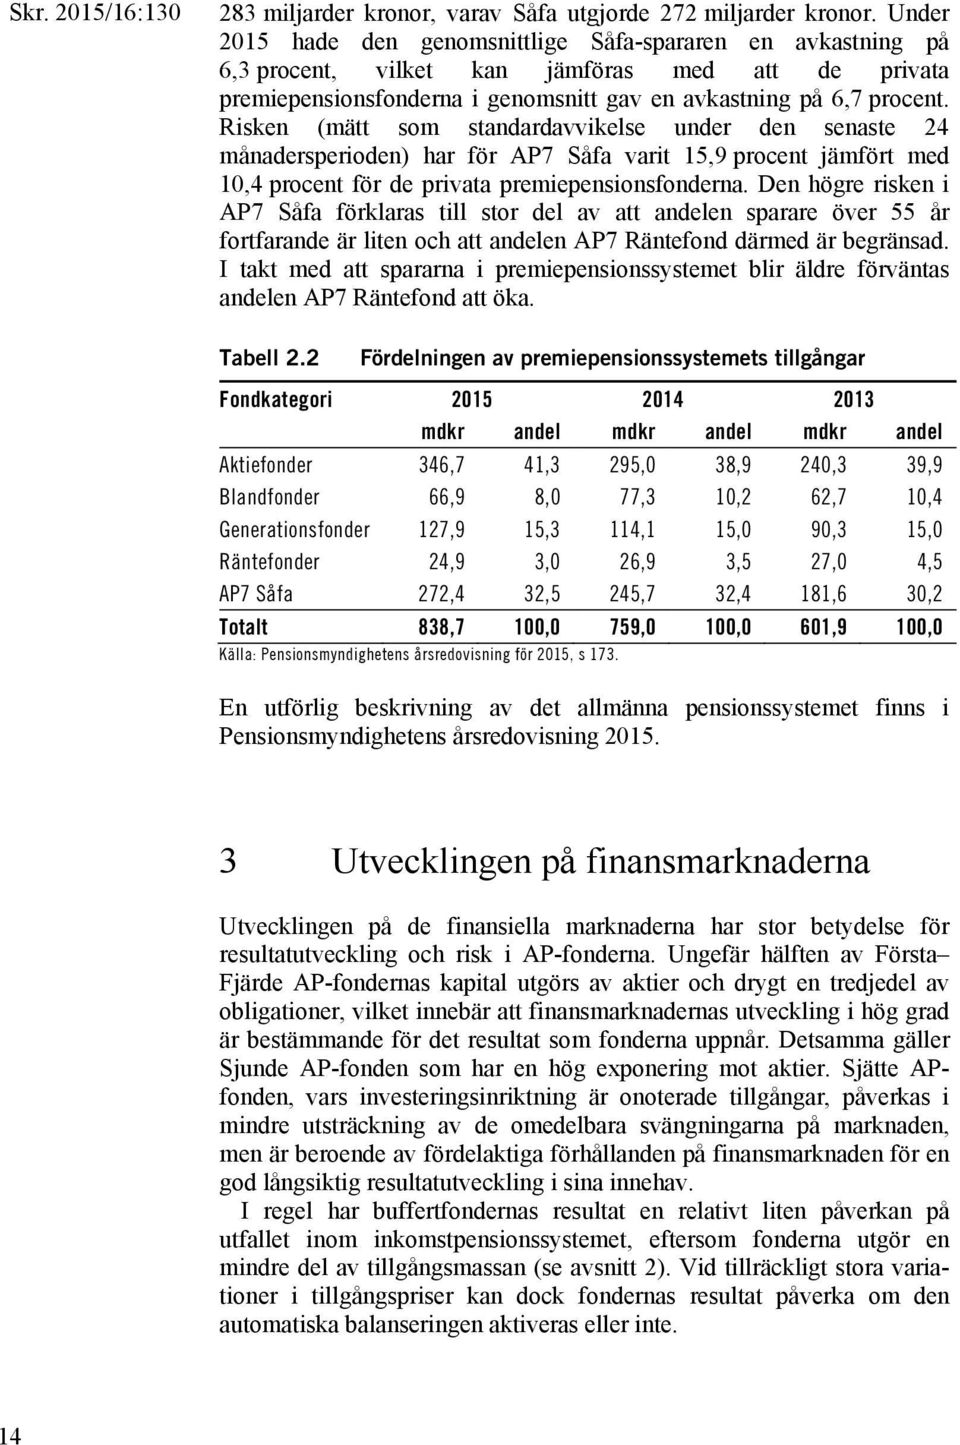 Risken (mätt som standardavvikelse under den senaste 24 månadersperioden) har för AP7 Såfa varit 15,9 procent jämfört med 10,4 procent för de privata premiepensionsfonderna.